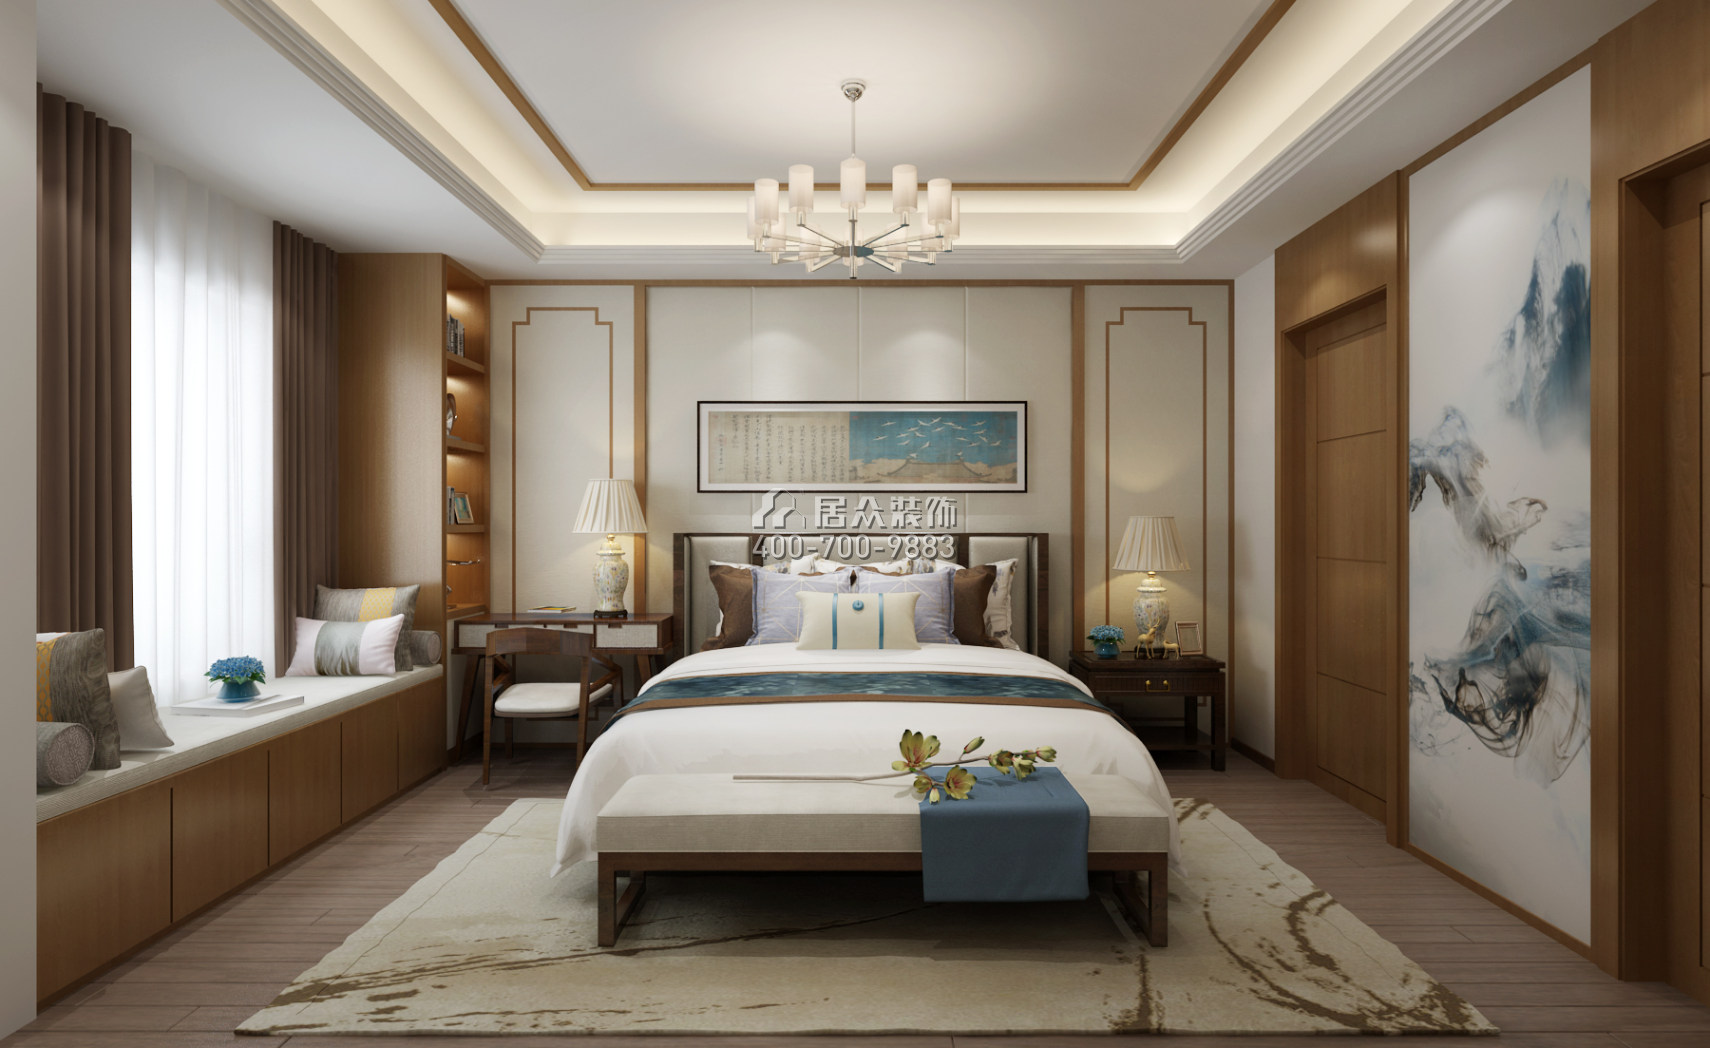 梅溪湖壹号188平方米中式风格平层户型卧室装修效果图